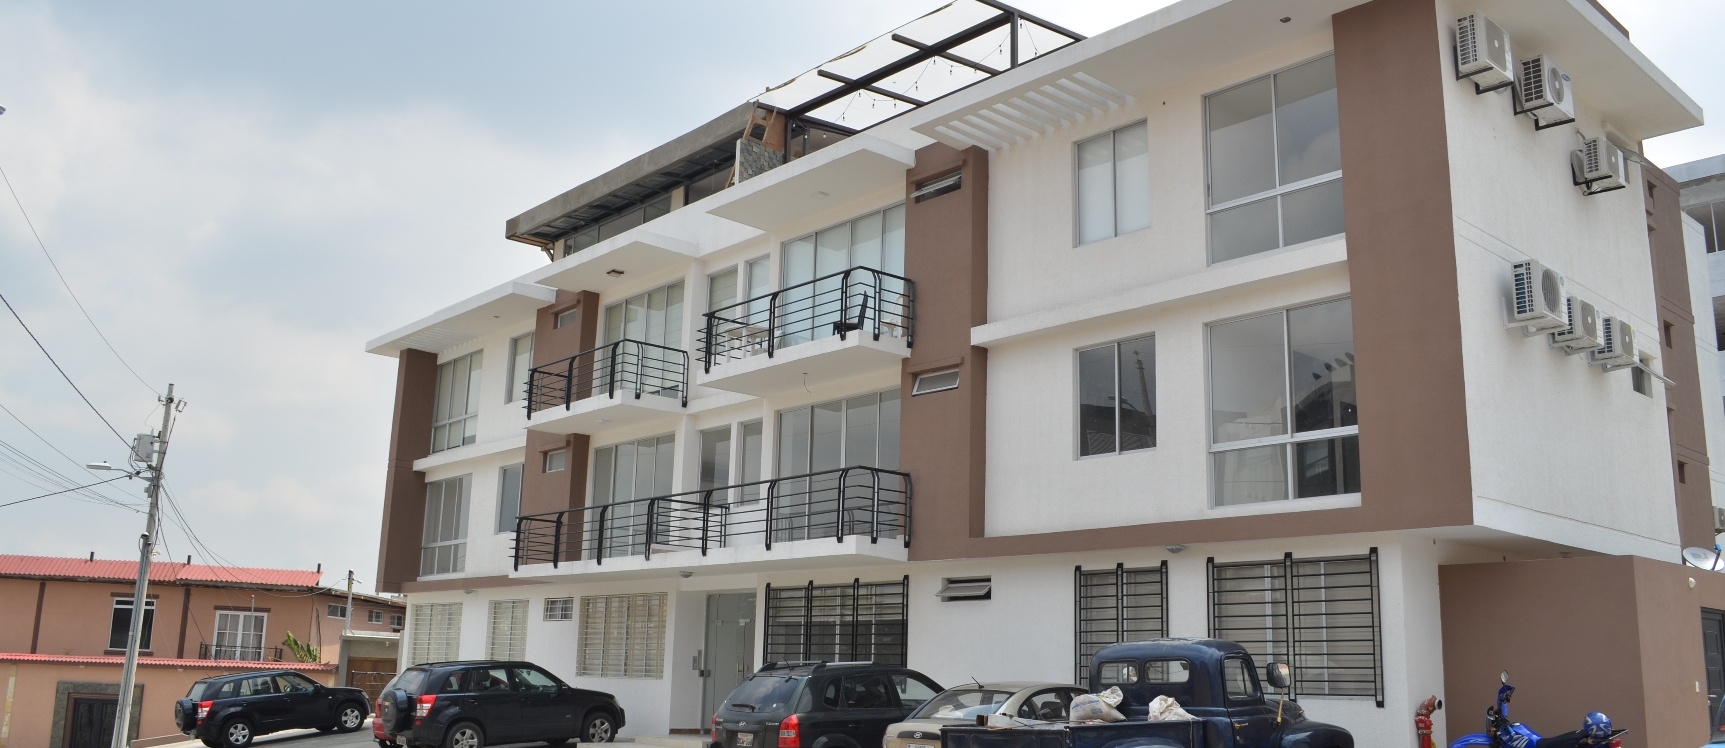 GeoBienes - Departamento en alquiler en Urbanización Santa Cecilia Condominio Budapest - Plusvalia Guayaquil Casas de venta y alquiler Inmobiliaria Ecuador